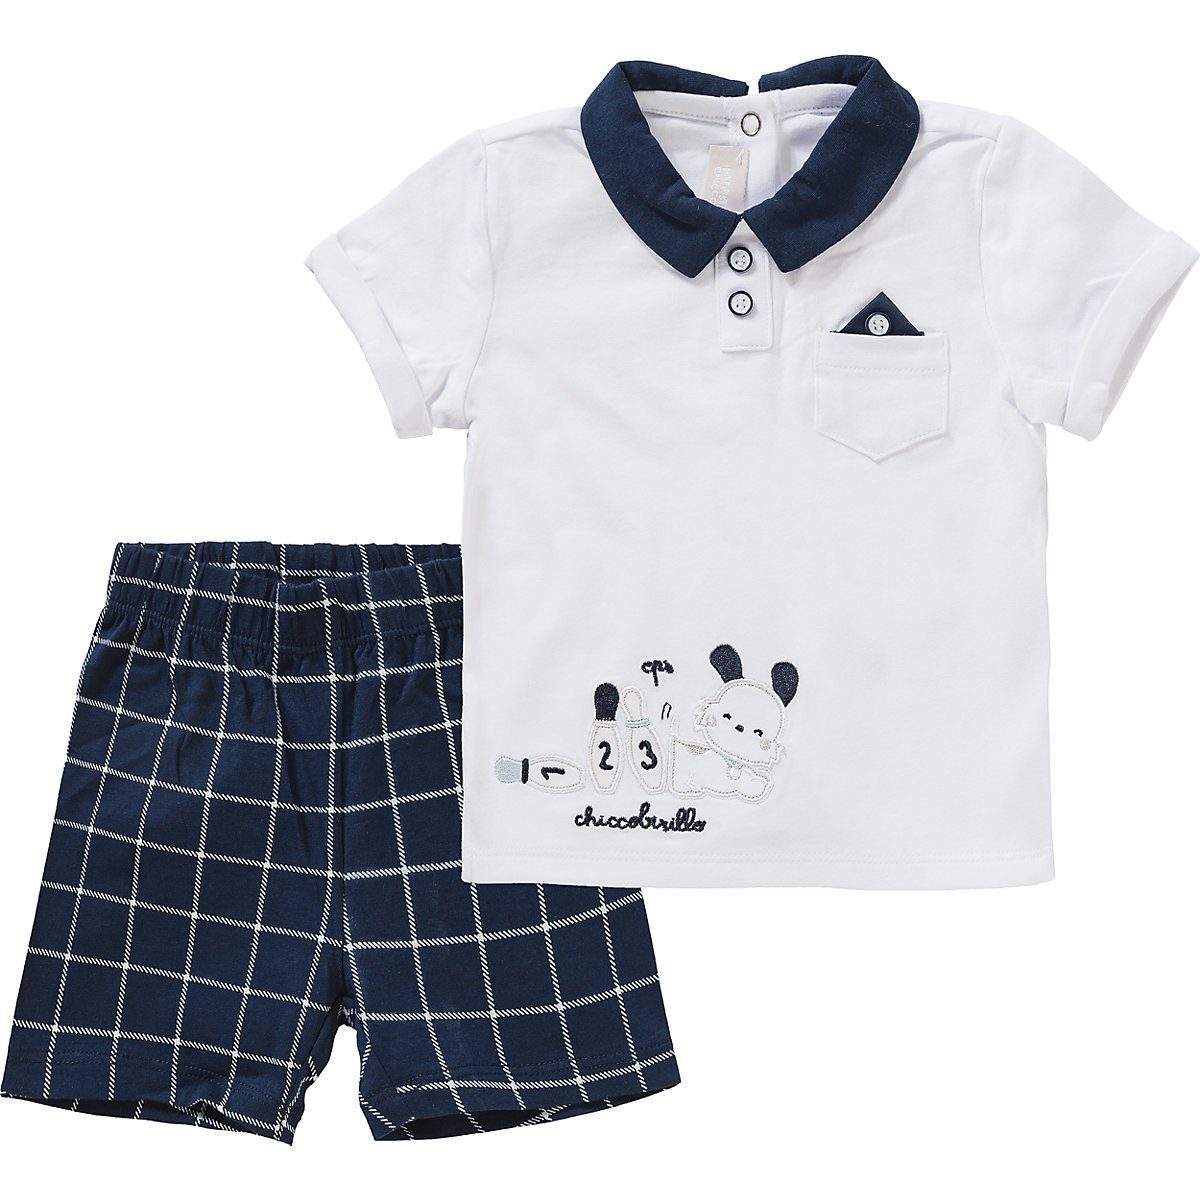 Chicco Poloshirt Baby Set Poloshirt + kurze Hose für Jungen